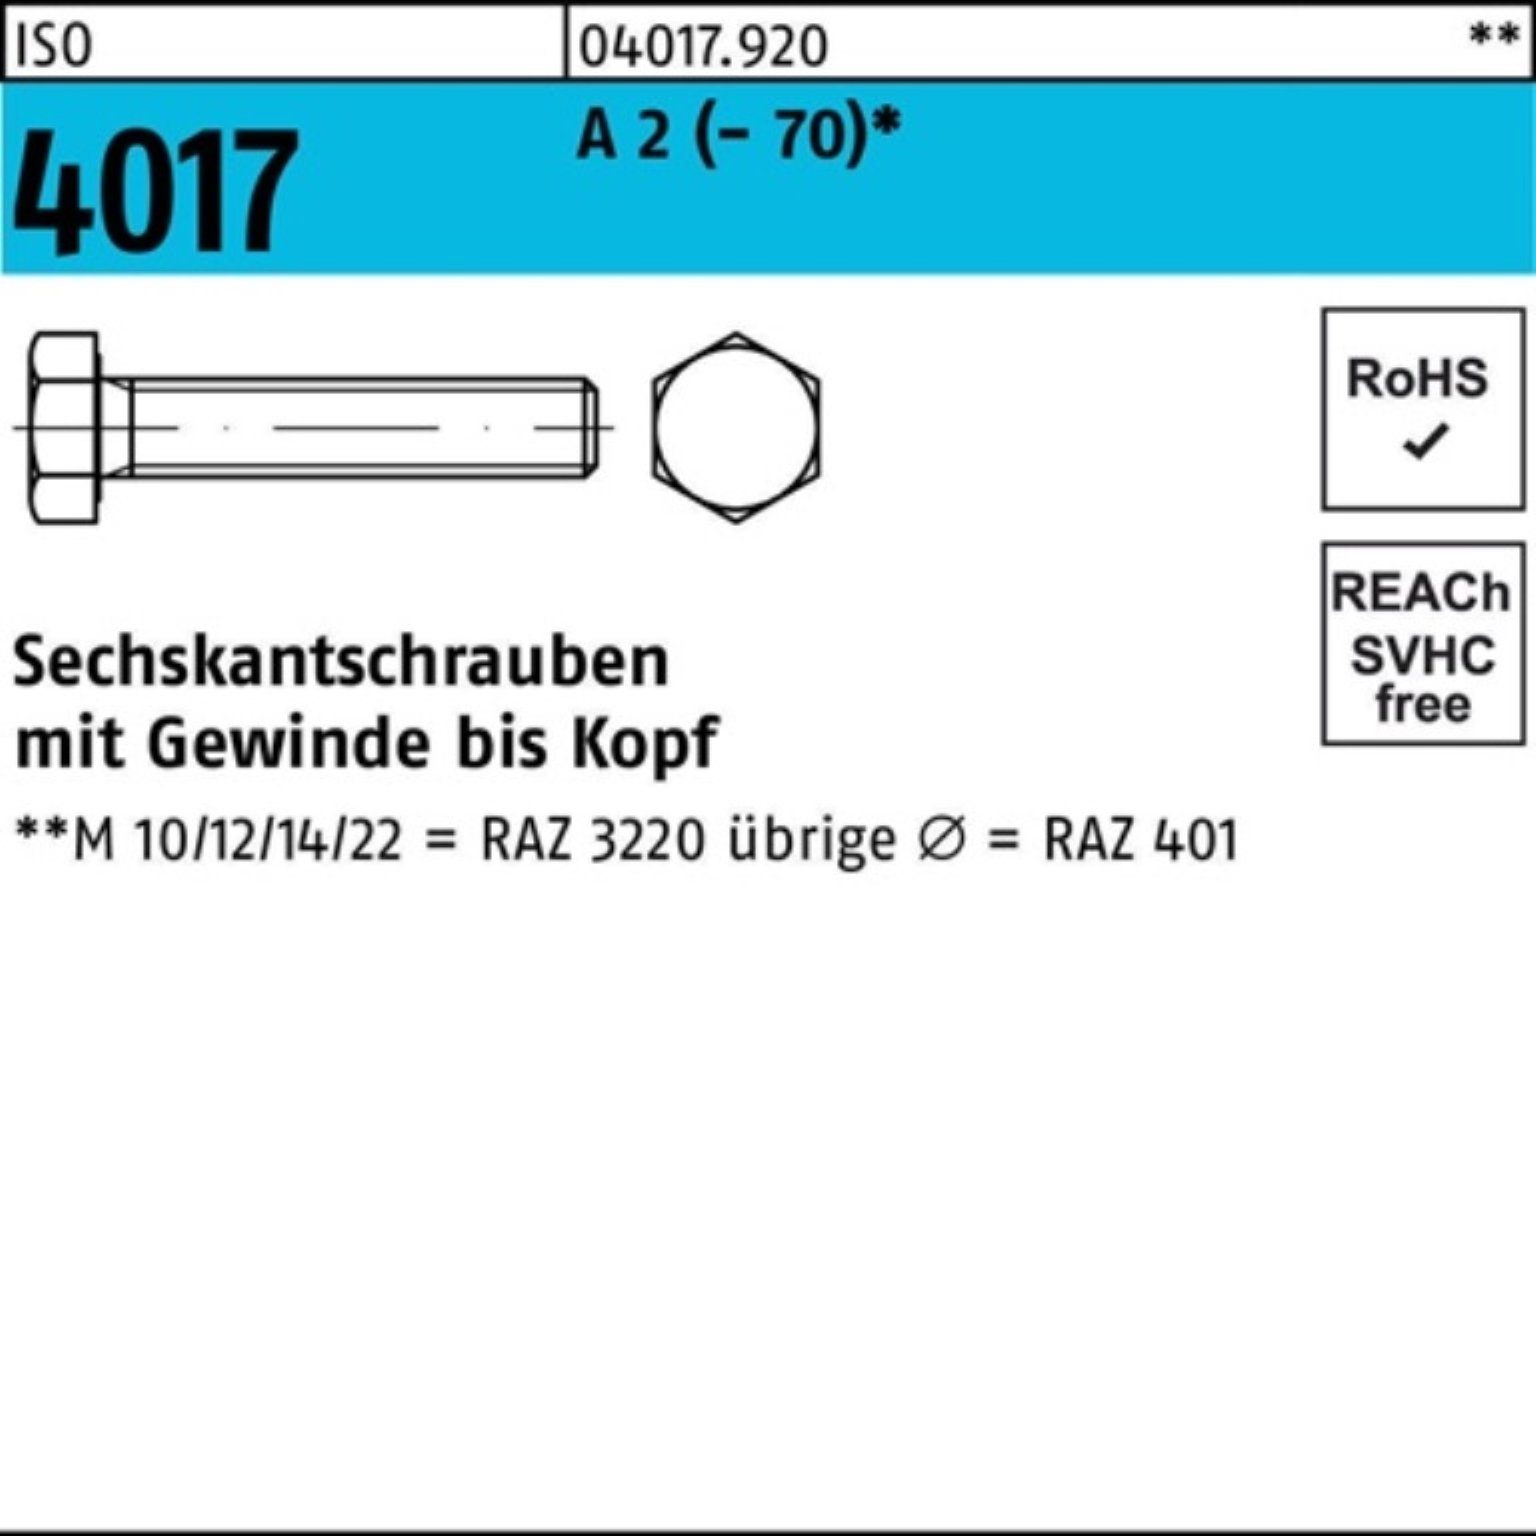 Bufab Sechskantschraube 200er Pack Sechskantschraube 6 200 Stück 2 VG A 4017 ISO M4x ISO 4017